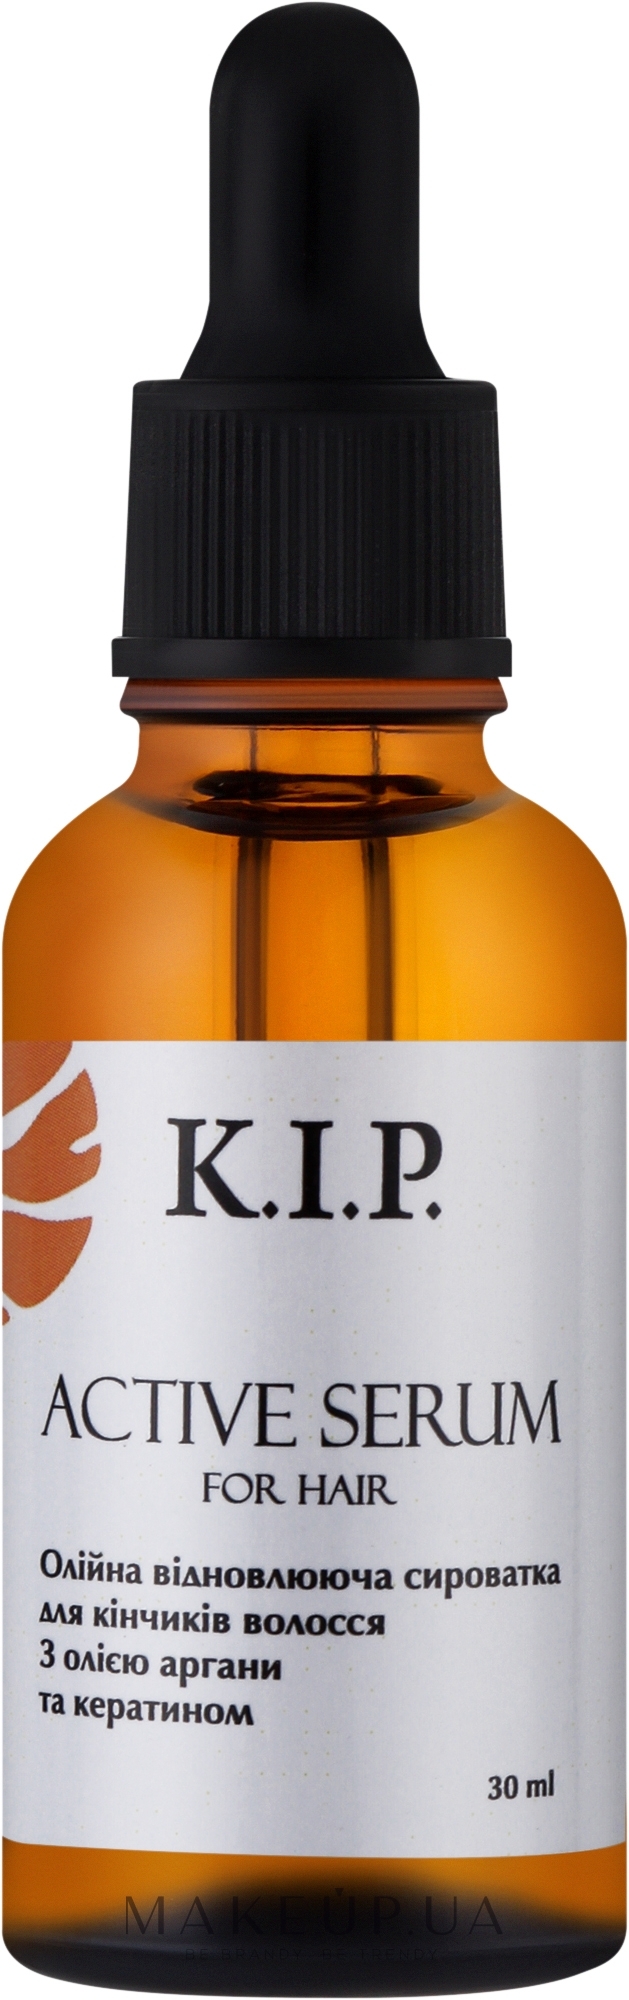 Масляная восстанавливающая сыворотка для кончиков волос "С маслом арганы и кератином" - K.I.P. Active Serum — фото 30ml